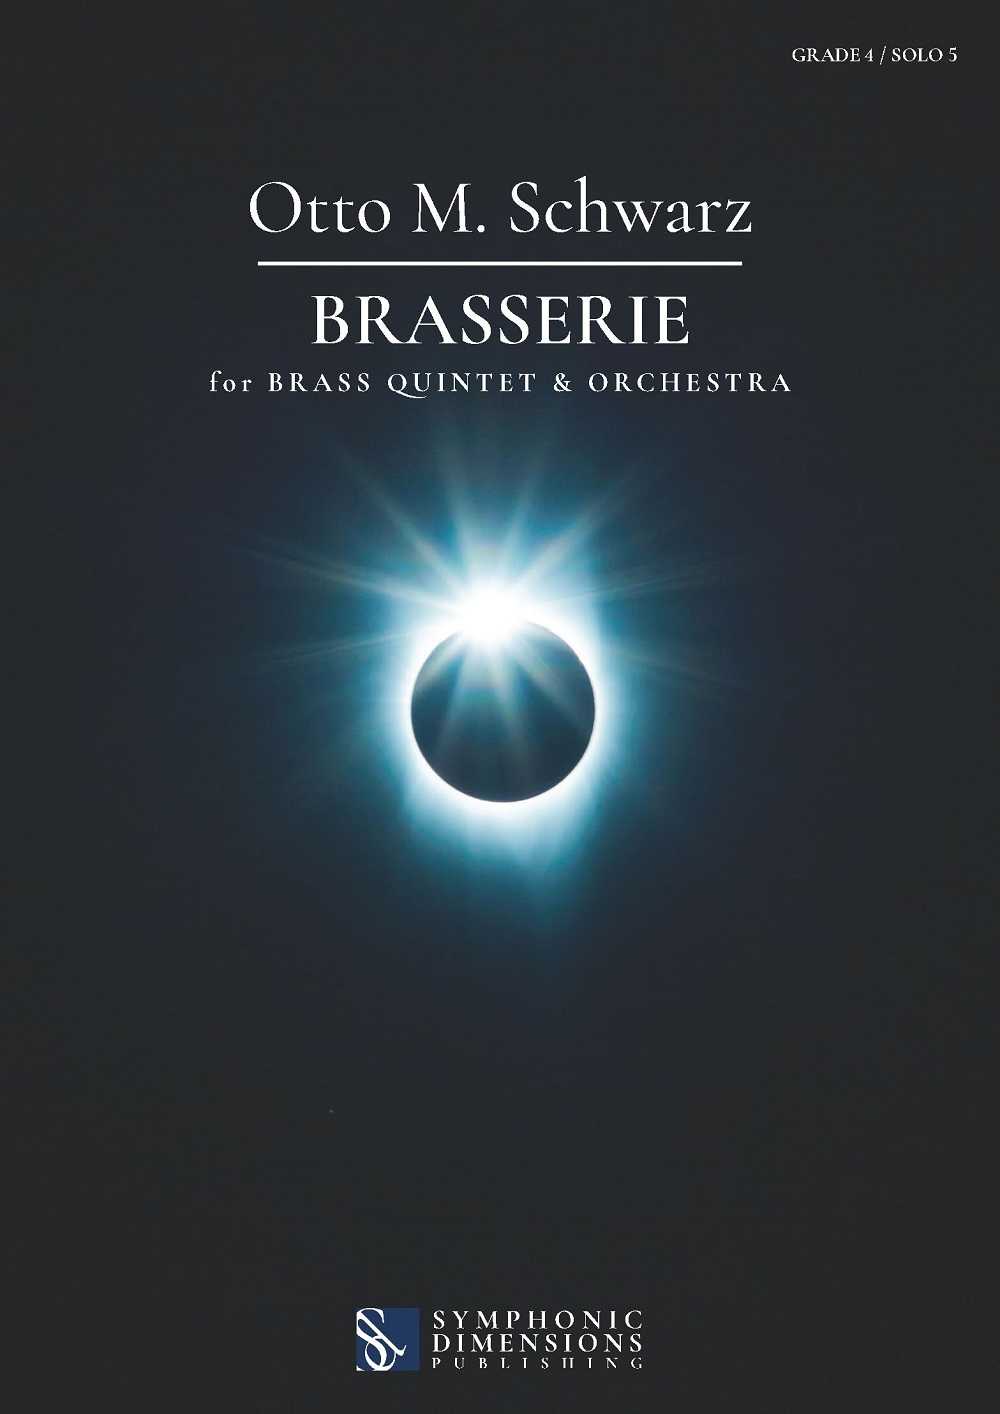 Brasserie for Brass Quintet & Orchestra